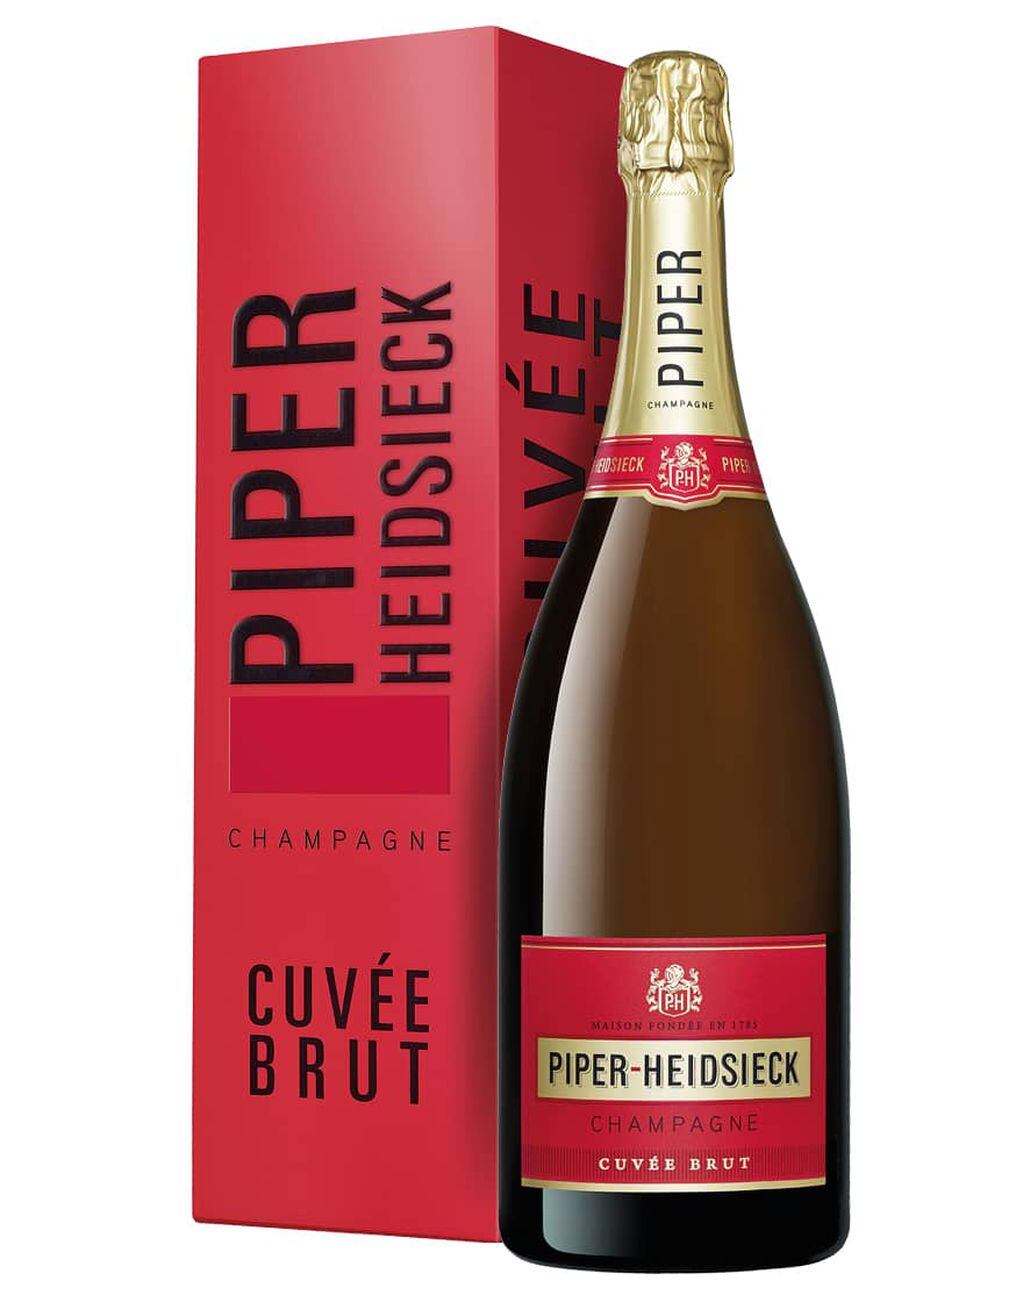 Botellón de Piper Heidsieck, de Champagne, Francia.